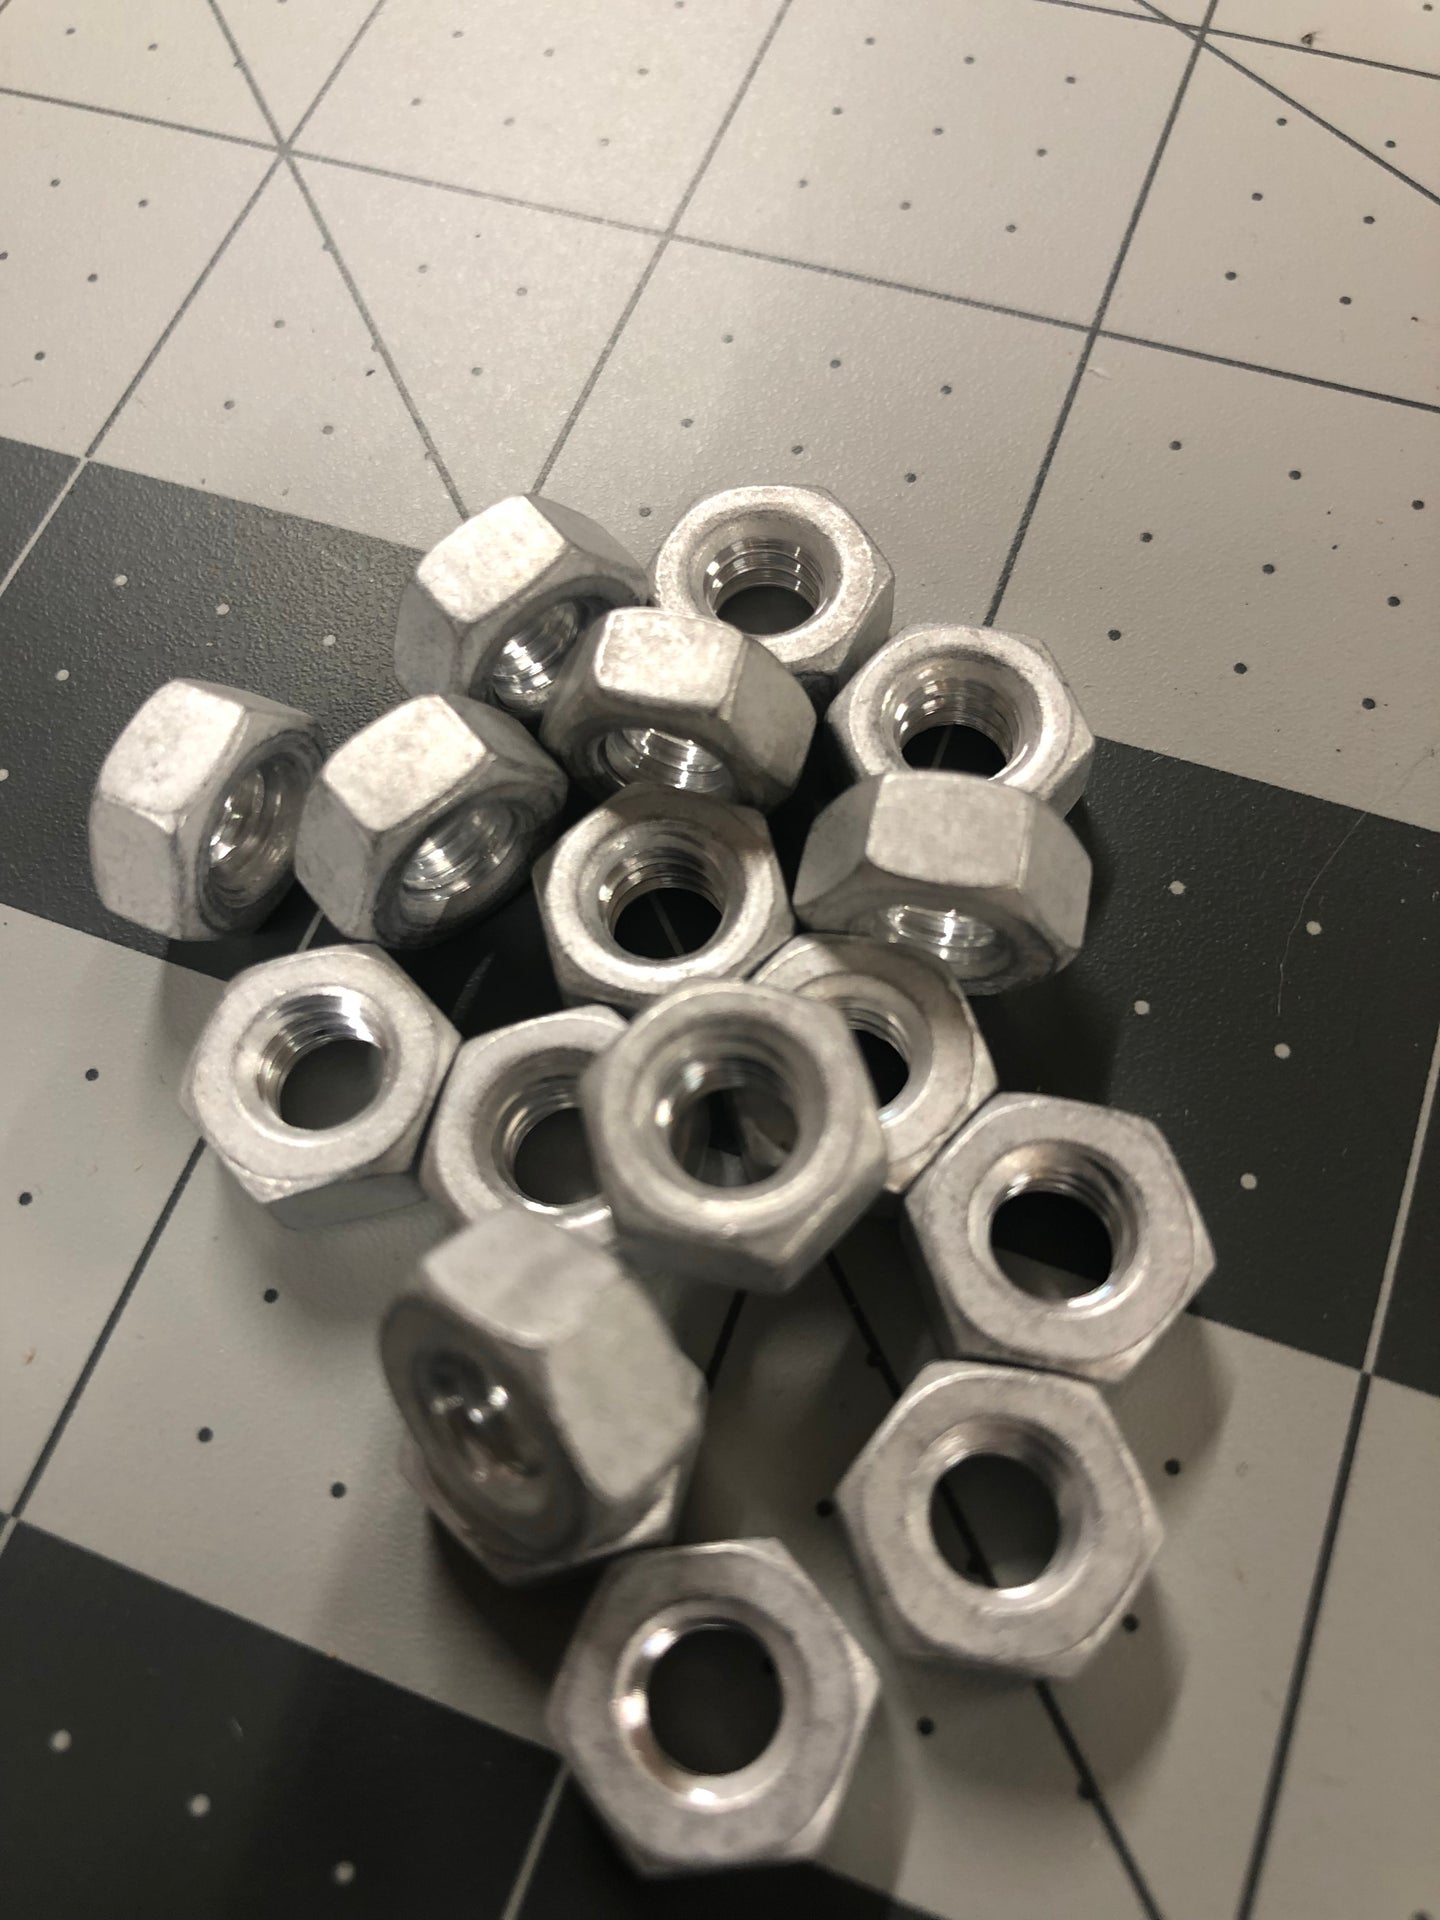 Aluminum 1/4-20 nuts